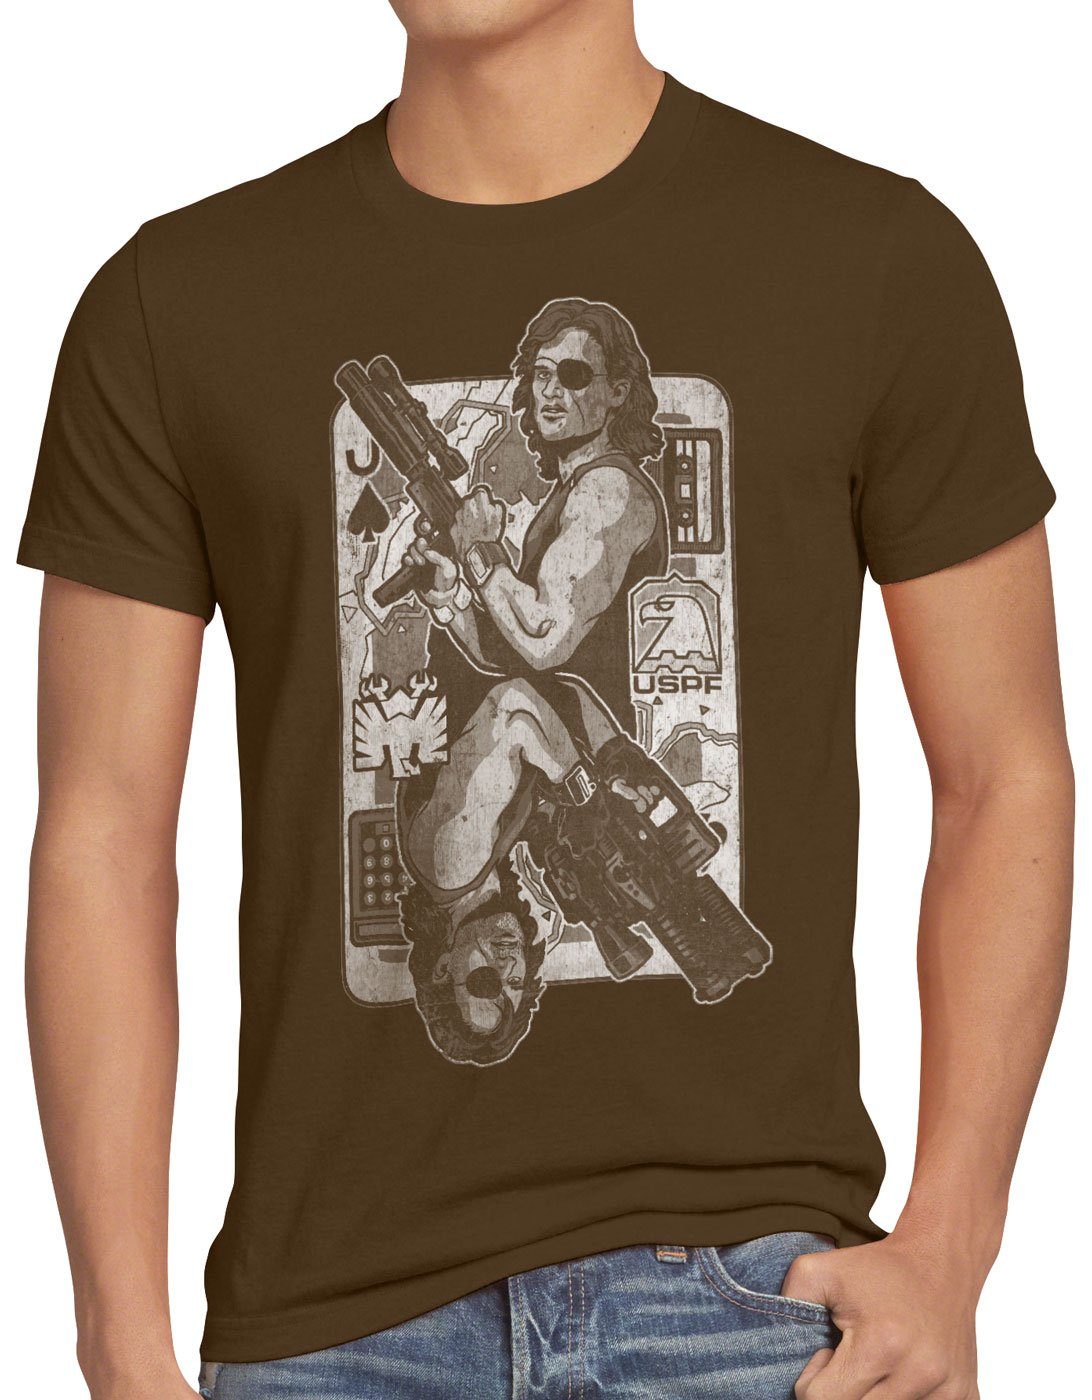 braun Snake klapperschlange style3 york new Print-Shirt die Plissken Herren T-Shirt